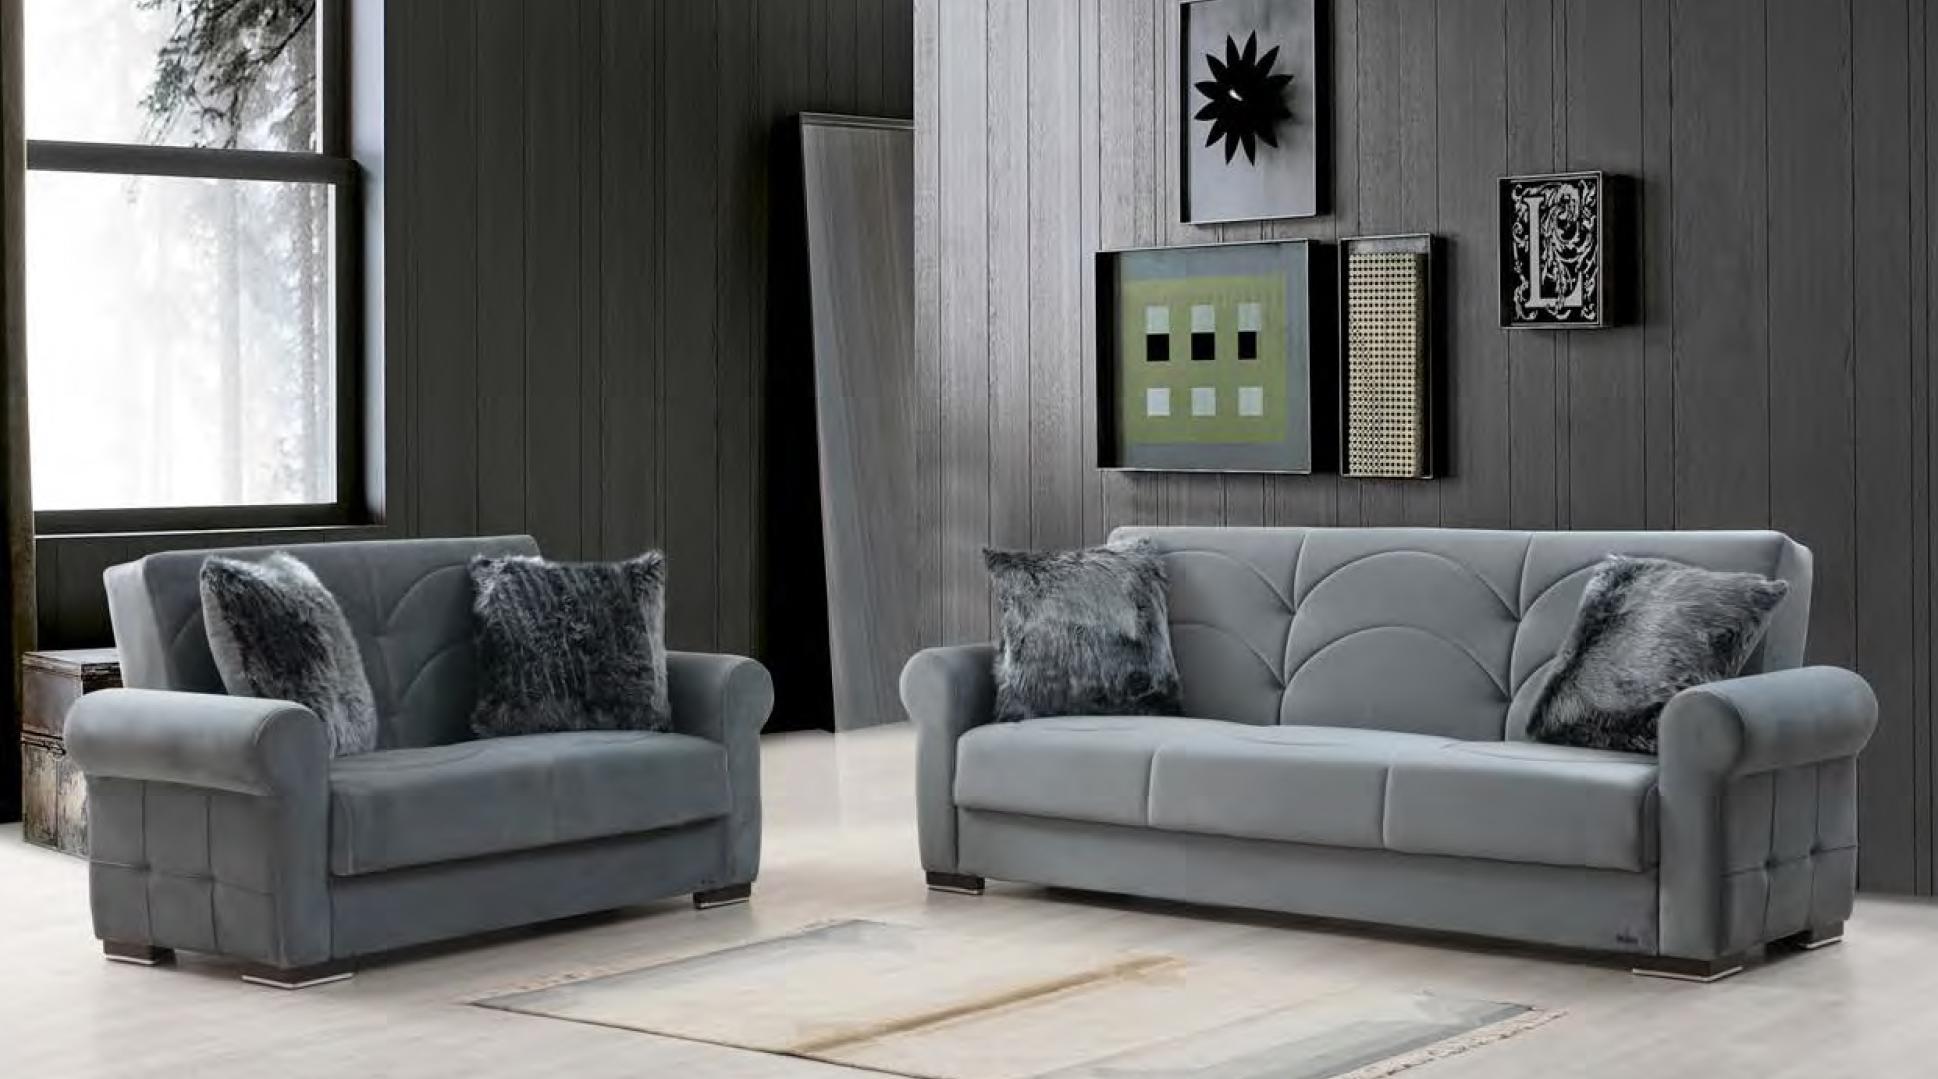 

                    
Alpha Furniture Madrid Sofa bed Gray Velvet Purchase 
